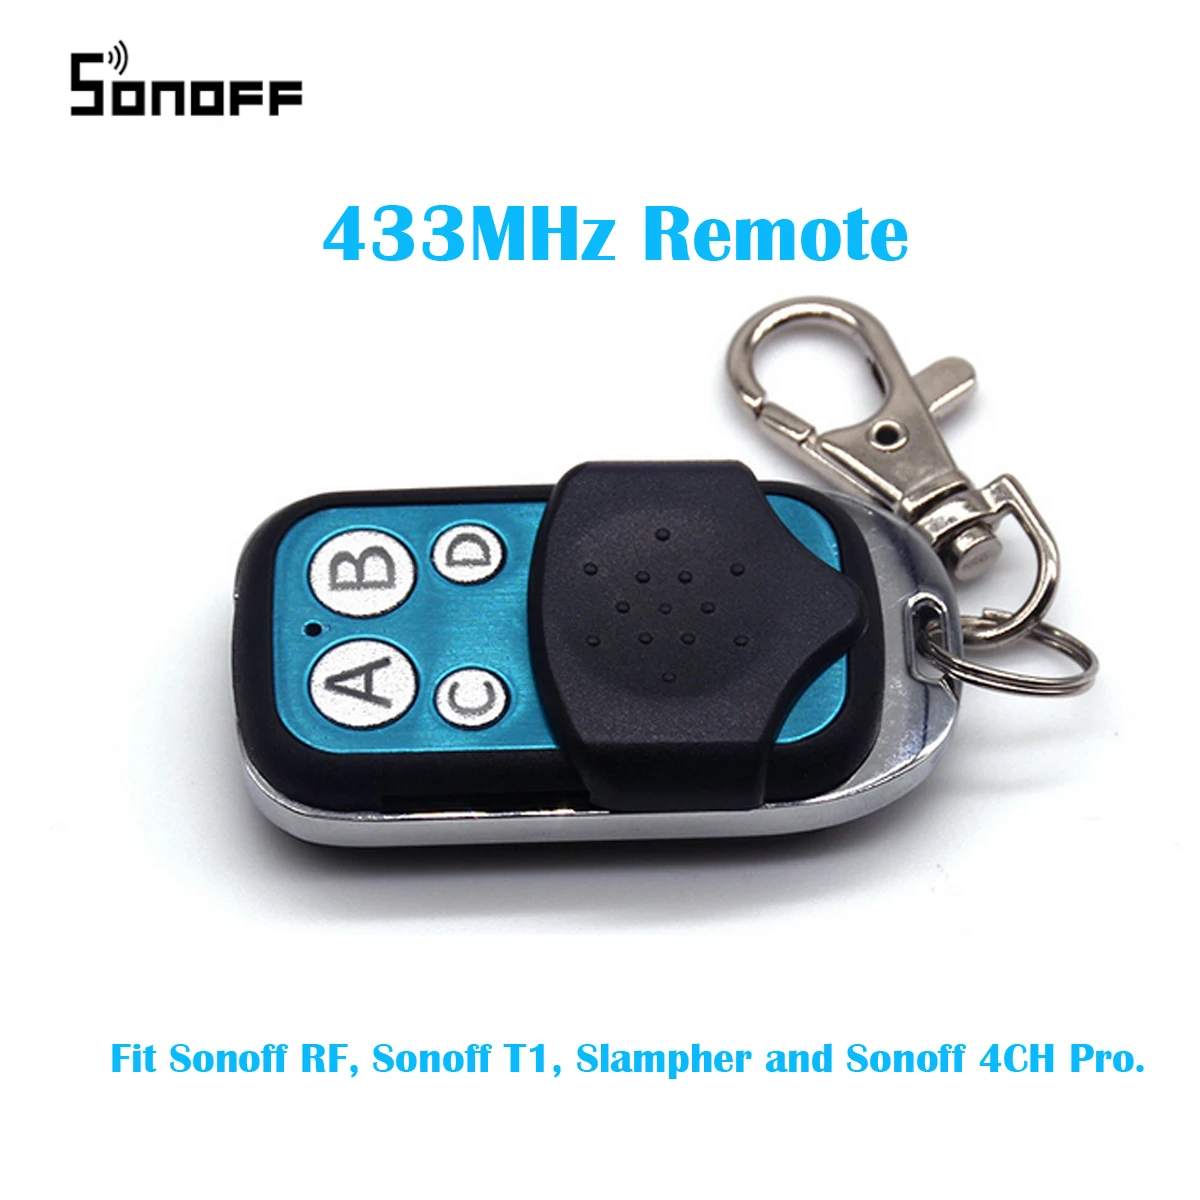 

Sonoff, 433MHz, 4 canales de RF controlador remoto ABCD 4 botones para Sonoff RF Slampher inteligente 4CH Pro R2 T1 remoto clave